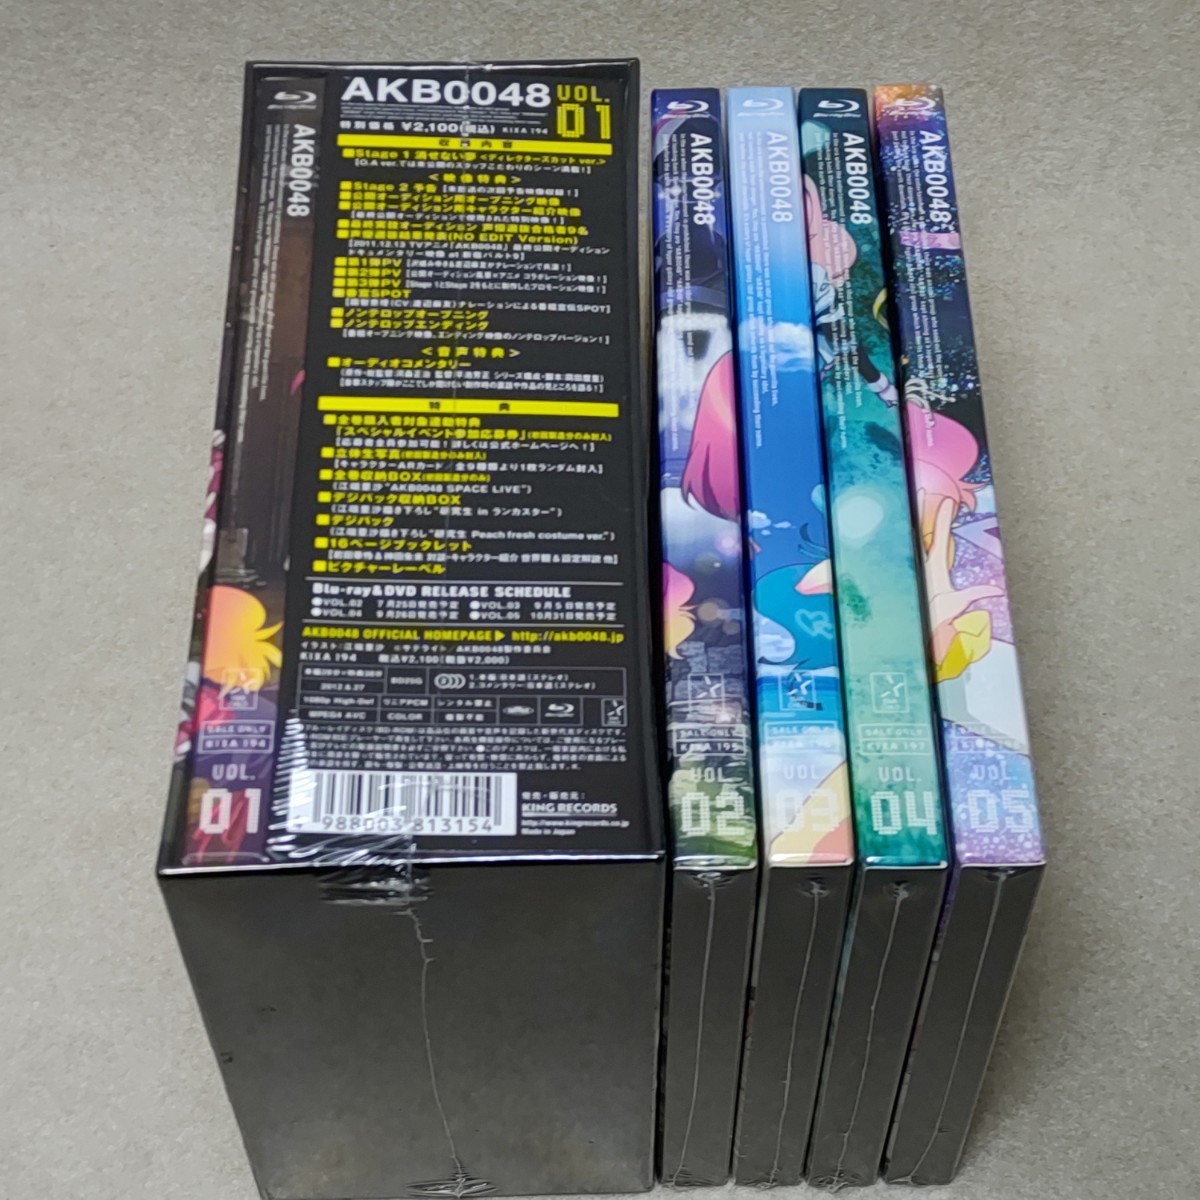 未開封 ブルーレイ AKB0048 Blu-ray 全5巻セット 初回